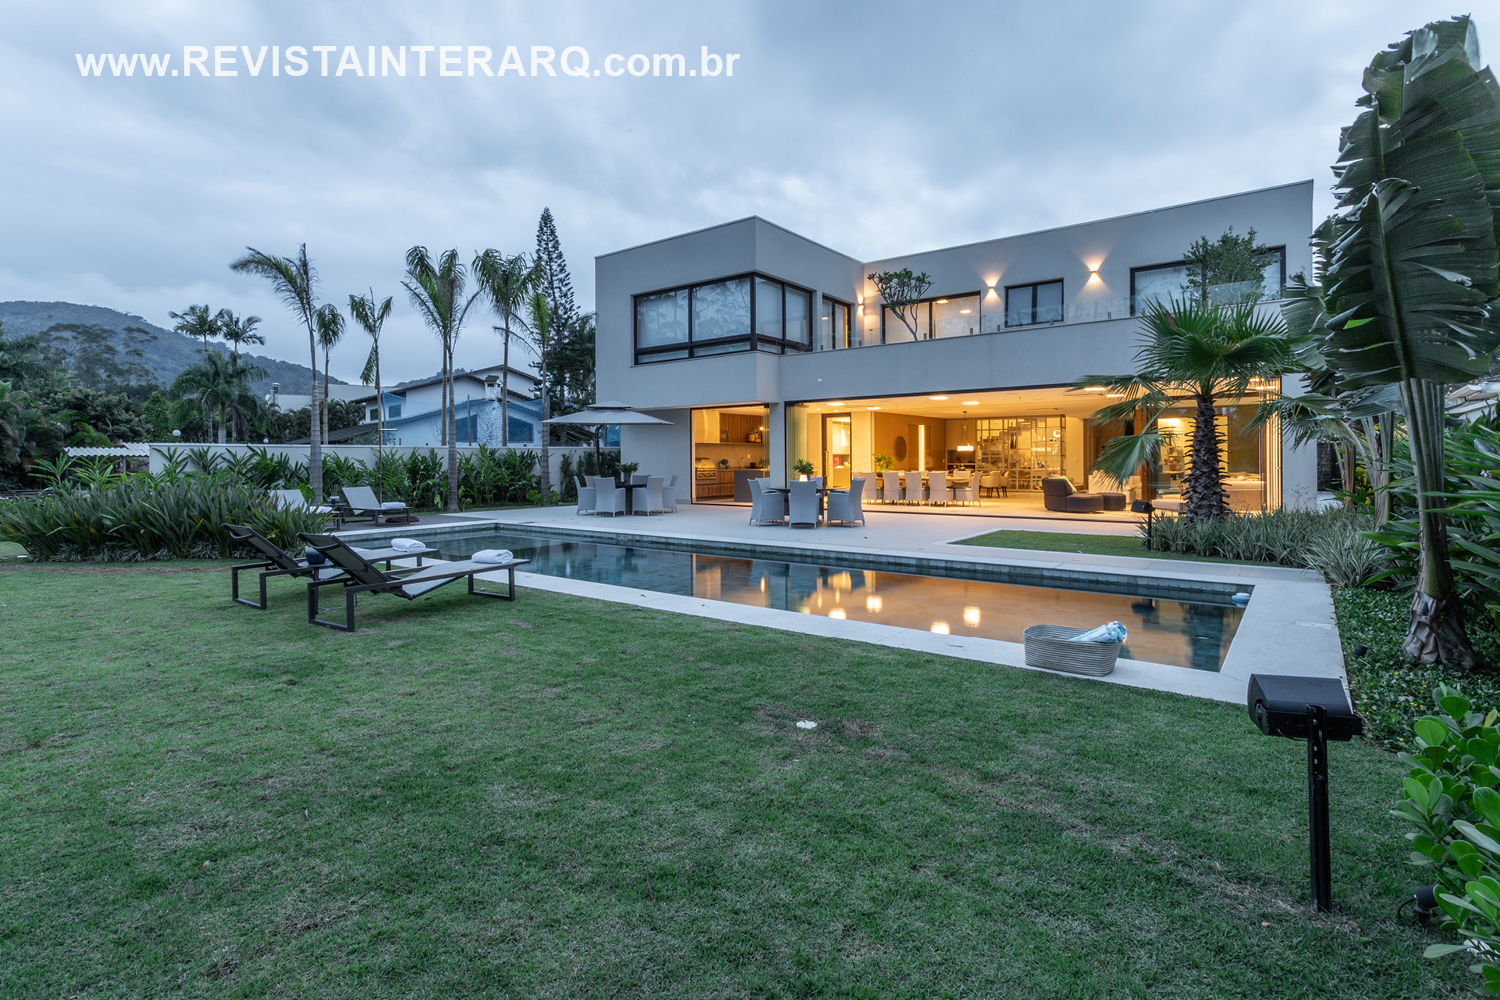 O estilo urbano deu vida a esta casa na praia projetada por Patrícia Penna - Revista InterArq | Arquitetura, Decoração, Design, Paisagismo e Lifestyle